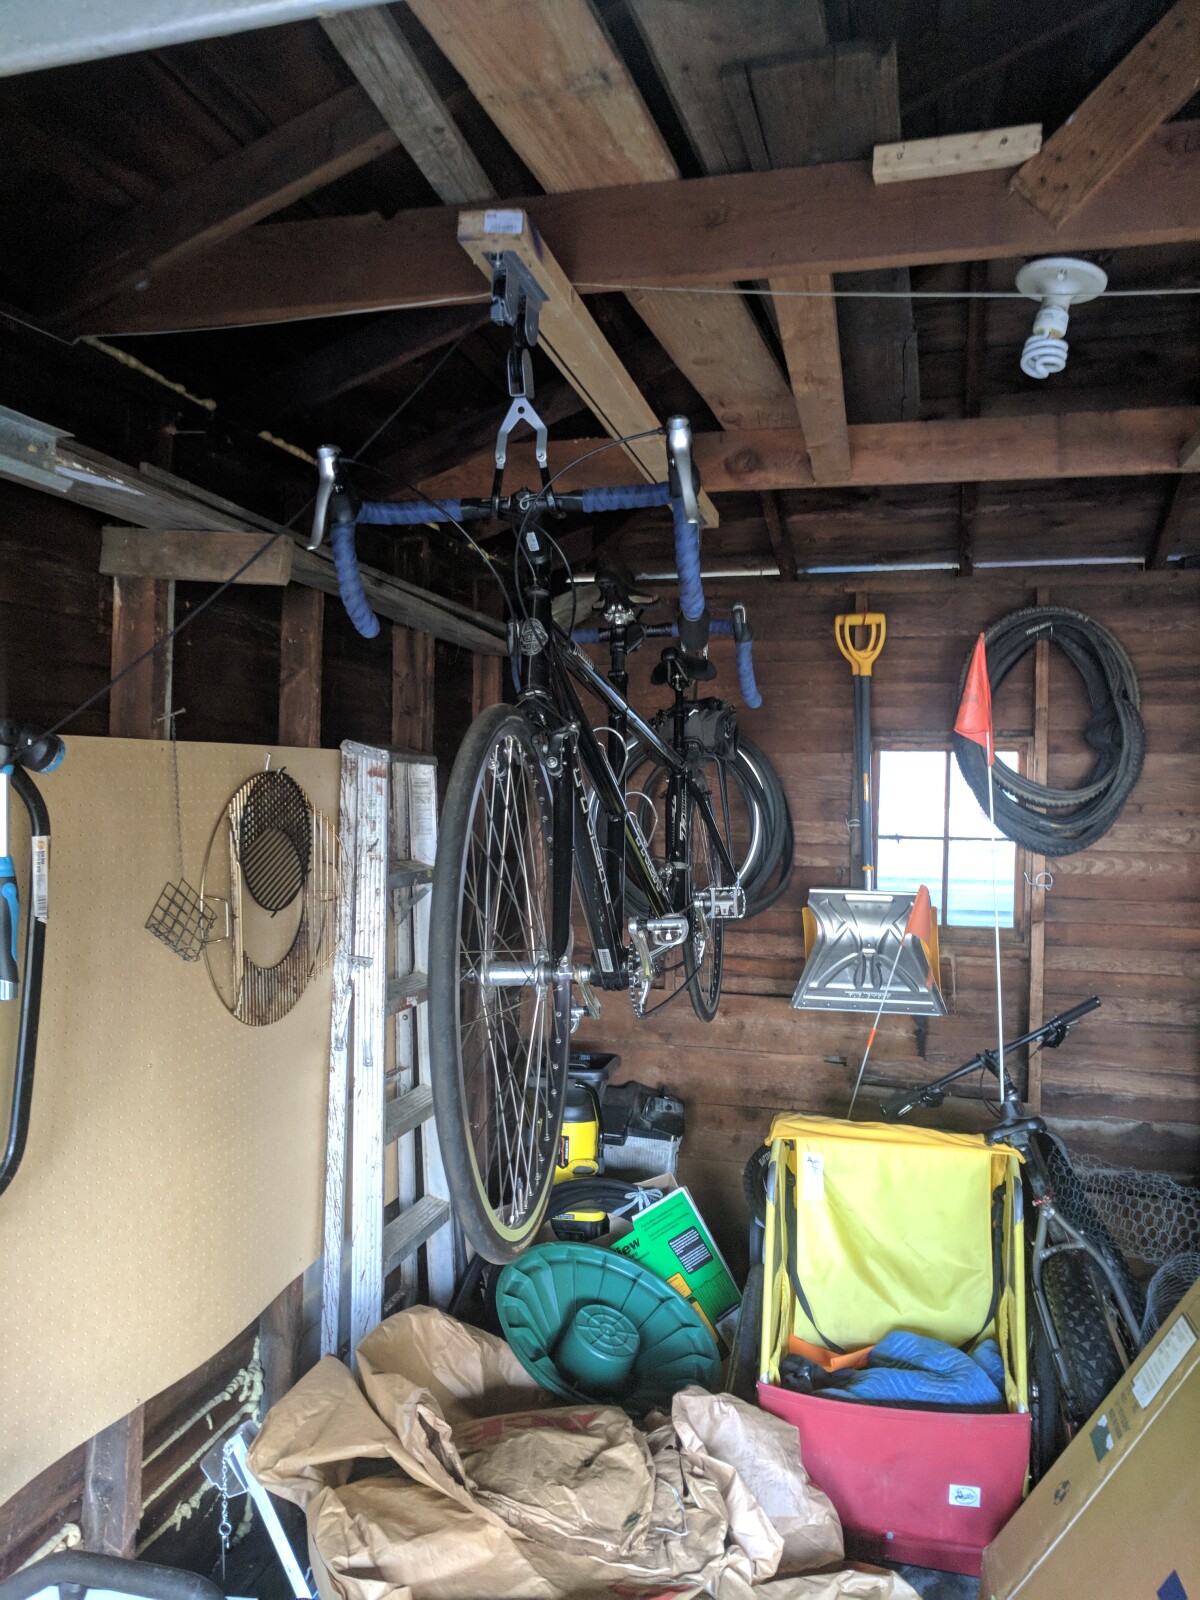 Tandem bike hanging from ceiling hoist